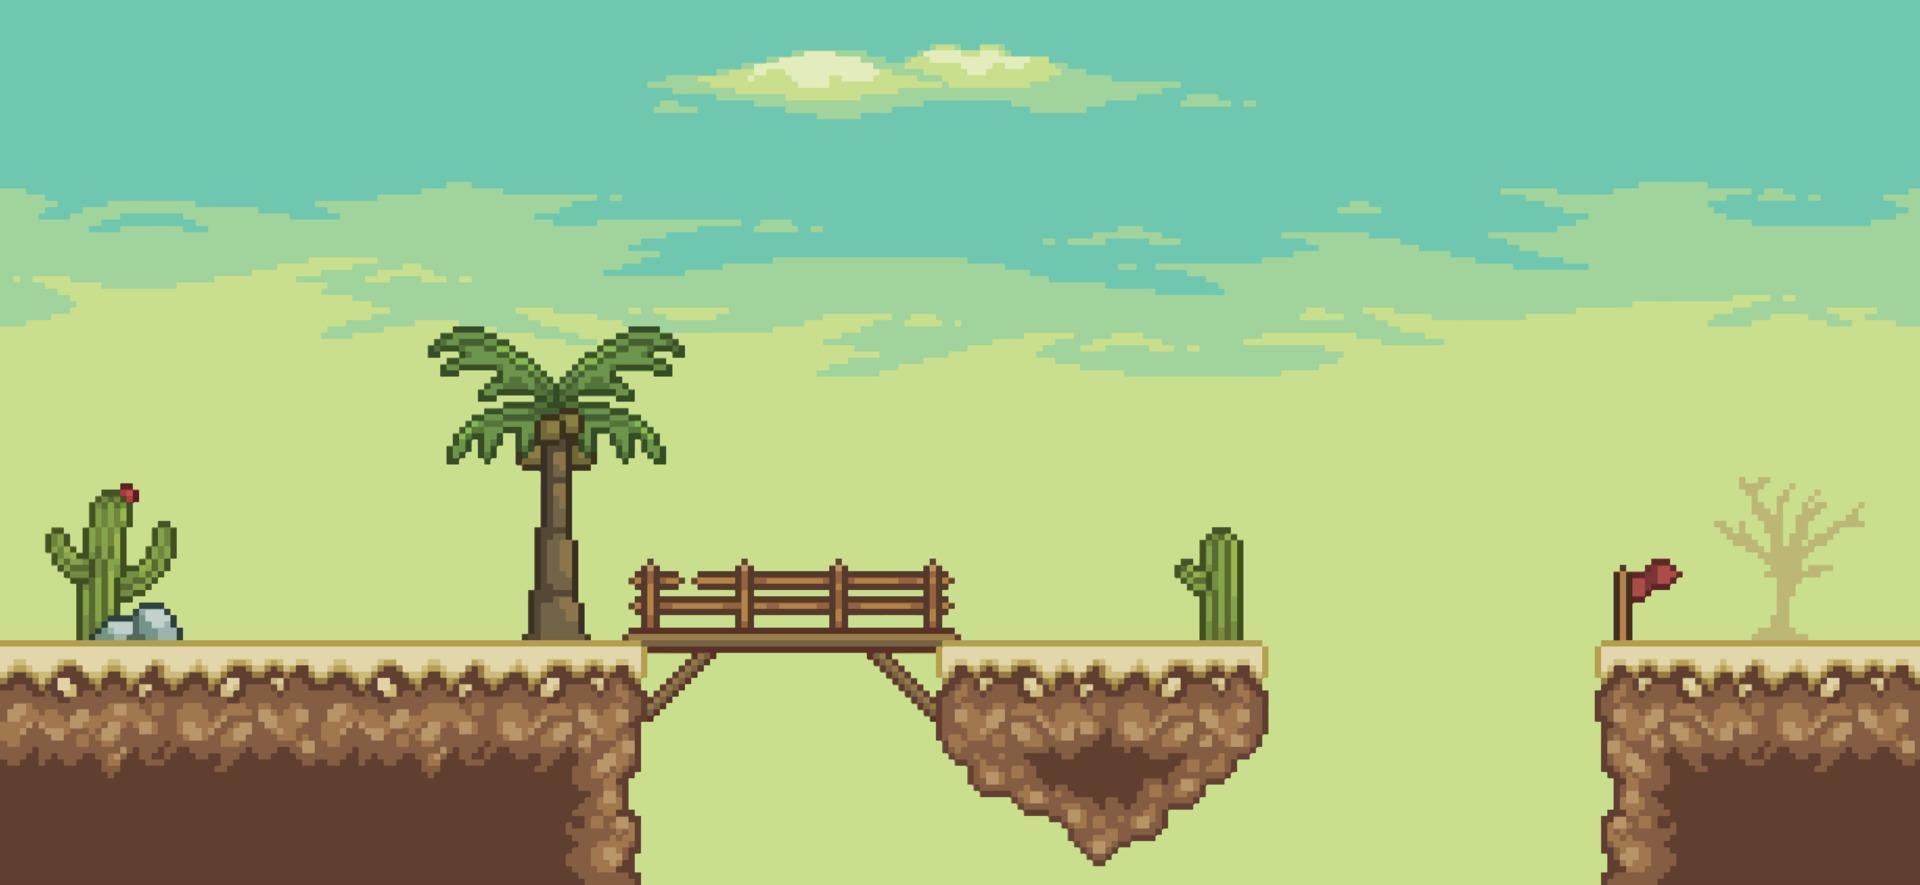 scène de jeu pixel art desert avec, pyramide, pont, palmier, cactus, arrière-plan 8 bits vecteur